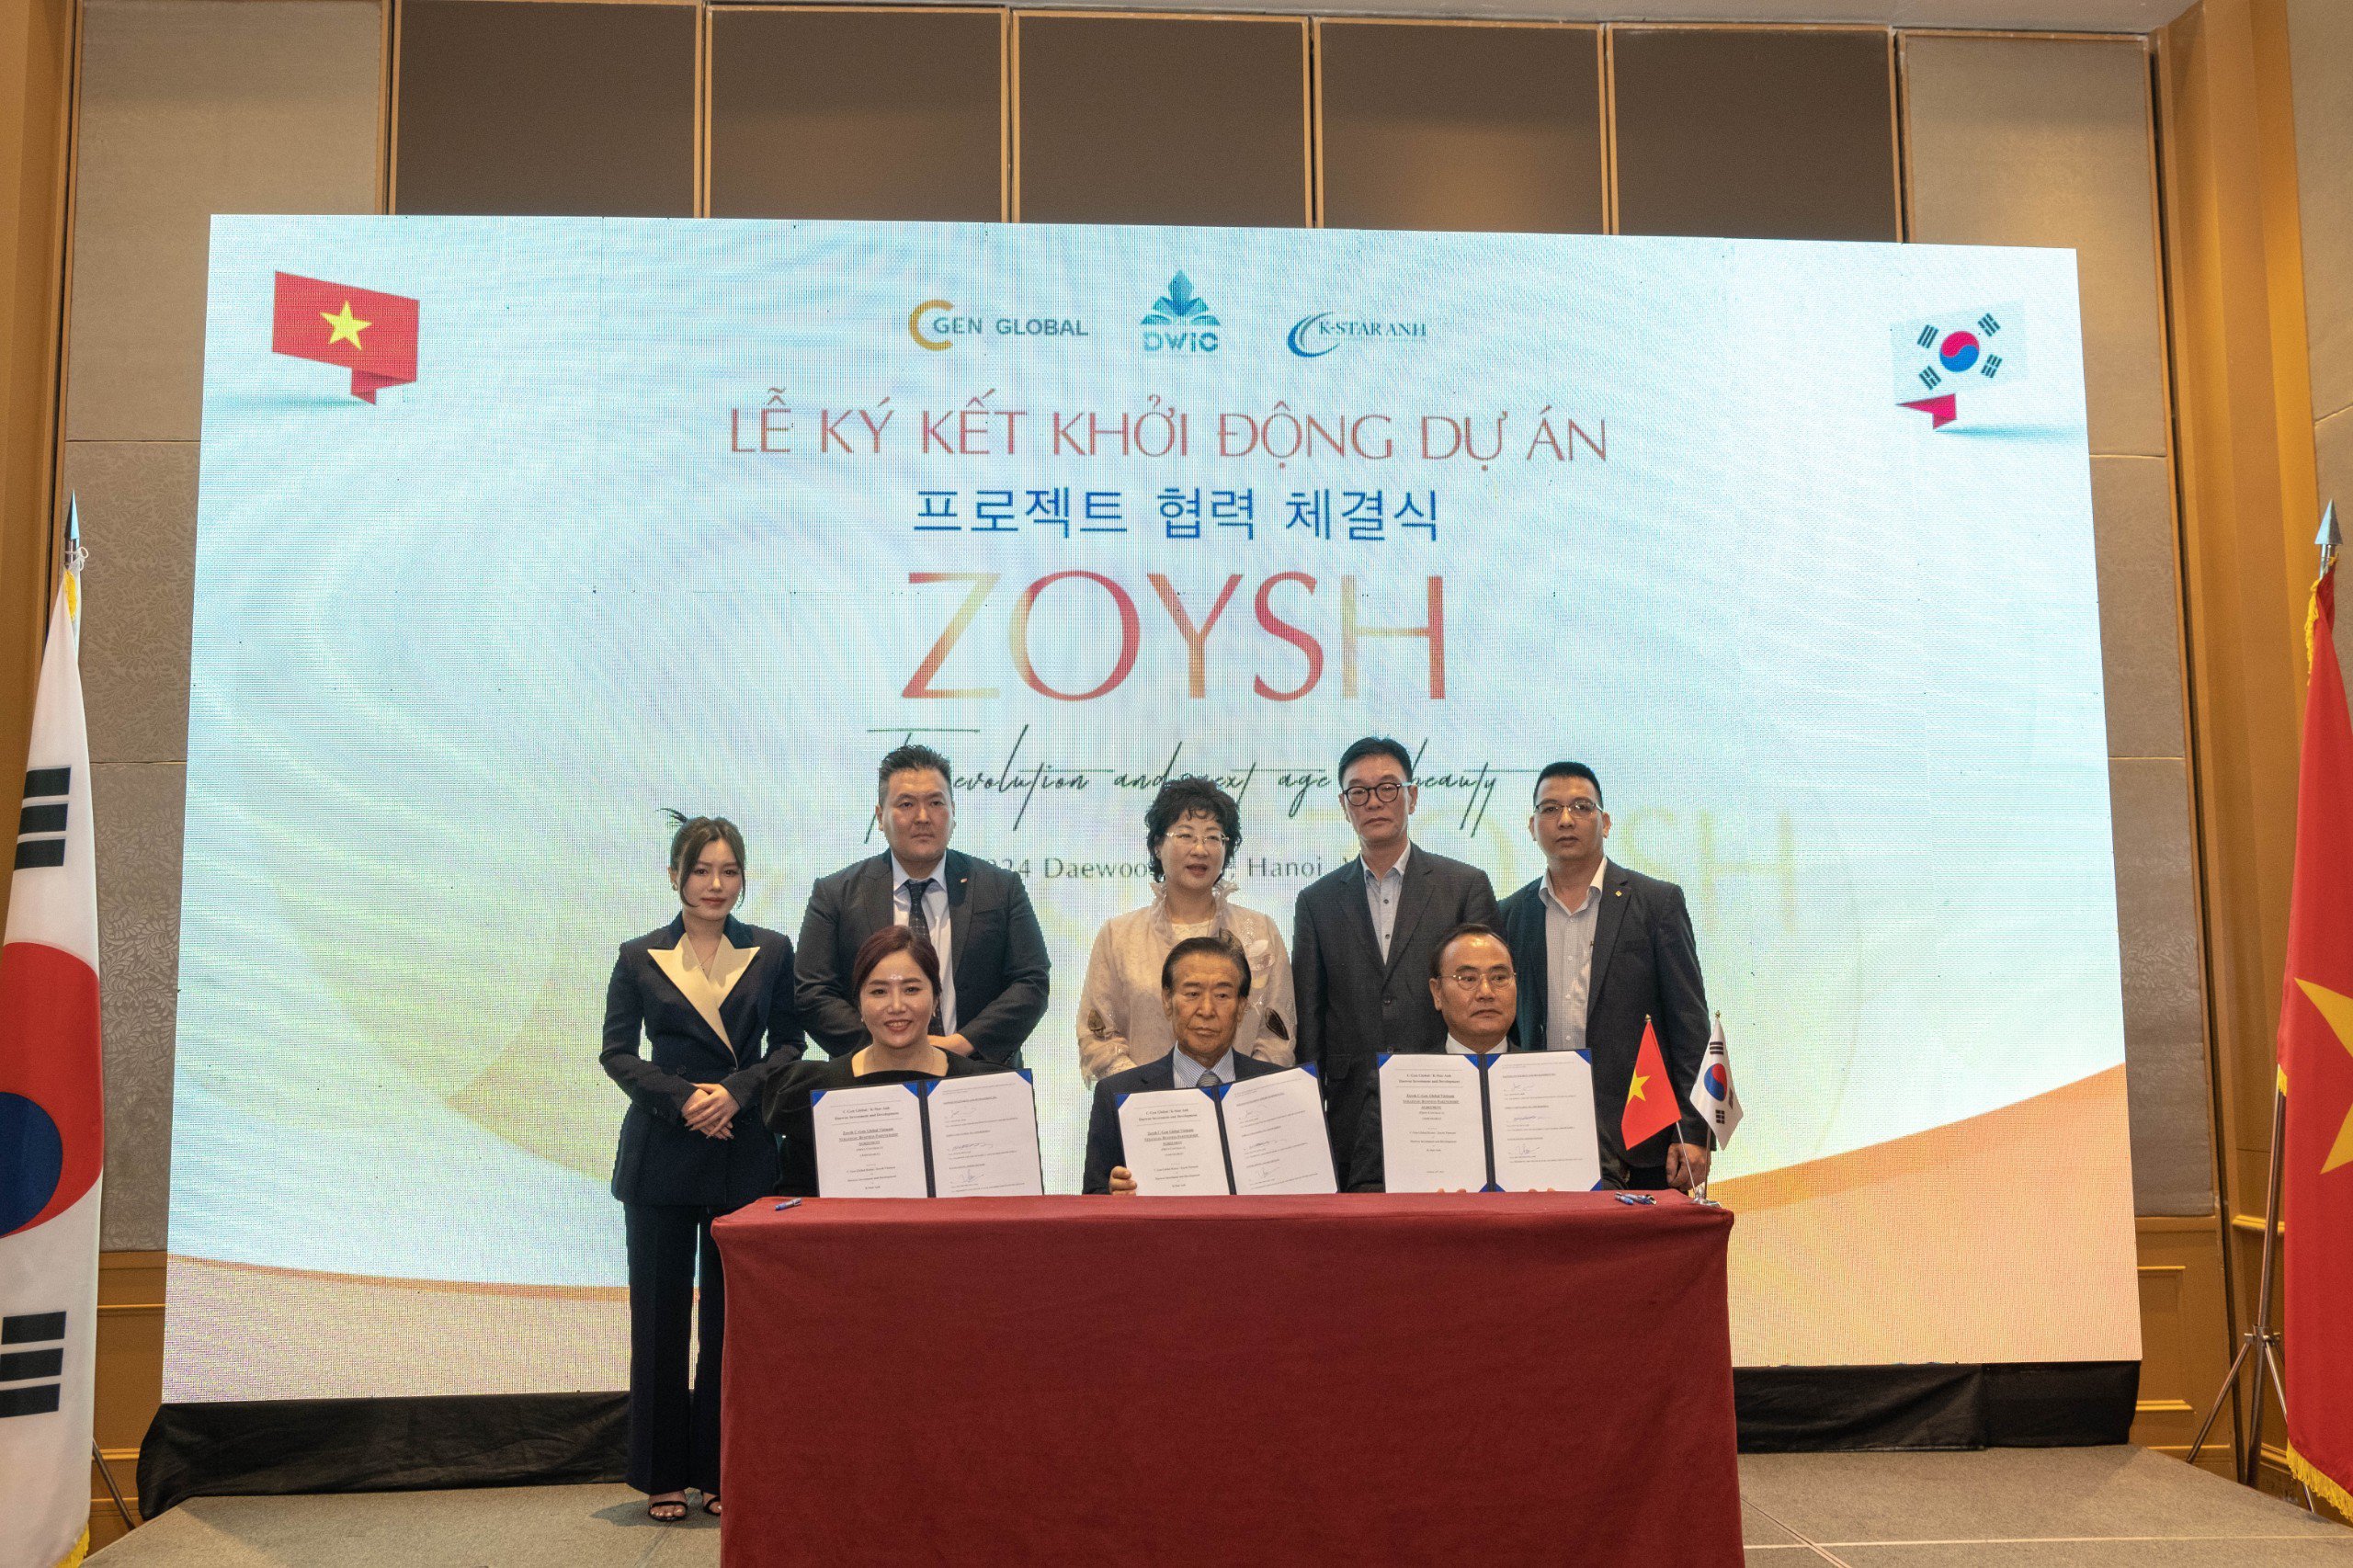 Star Anh ra mắt dự án Zoysh C Gen Global Vietnam cùng tập đoàn Daewoo Hàn Quốc - 3